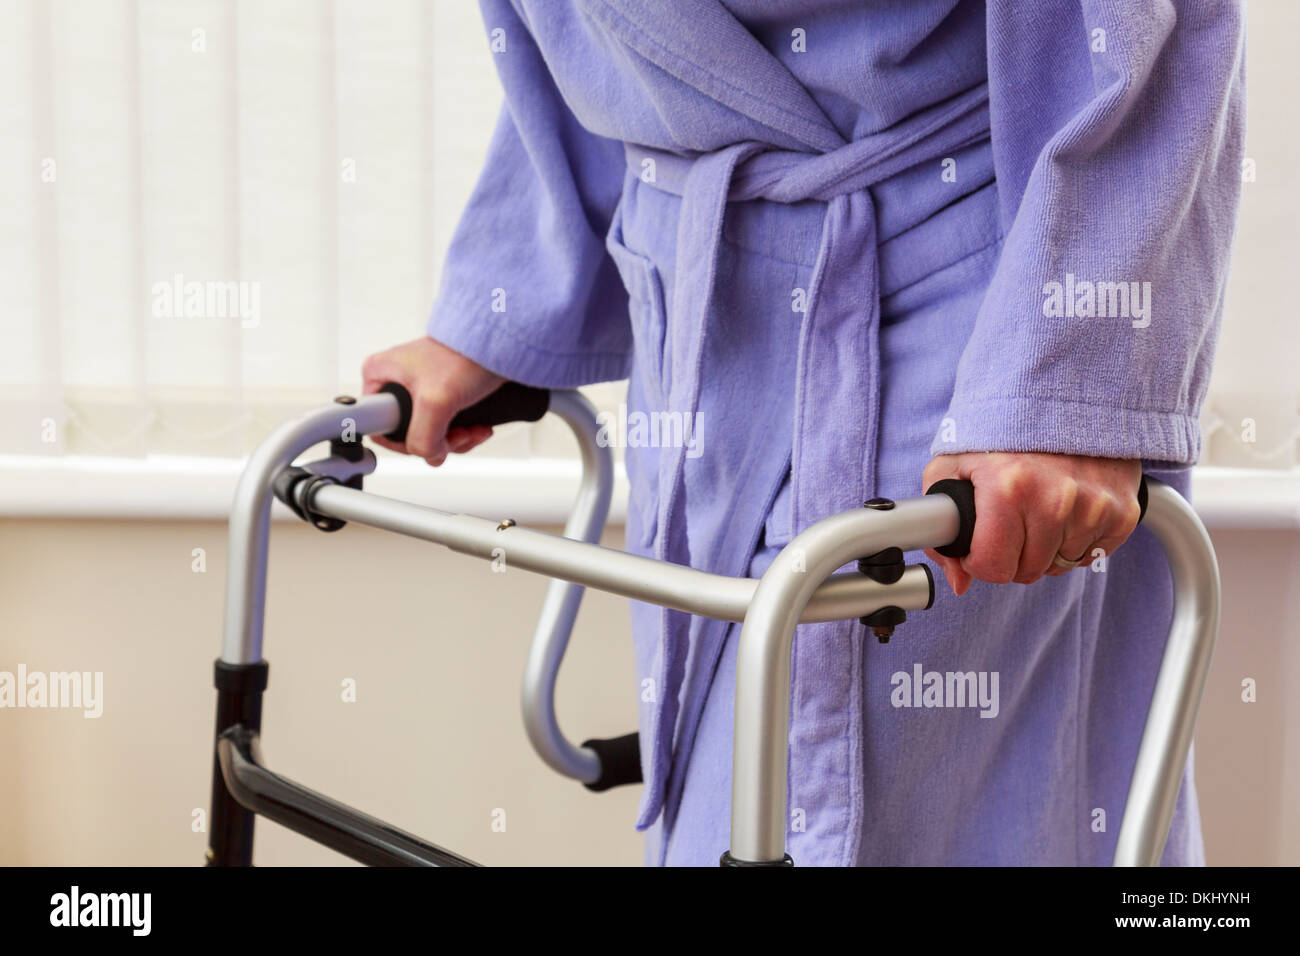 Personnes âgées senior woman personne plus âgée main tenant à l'aide d'un déambulateur ou cadre zimmer Chariot de support pour marcher dans une maison. Angleterre Royaume-uni Grande-Bretagne Banque D'Images